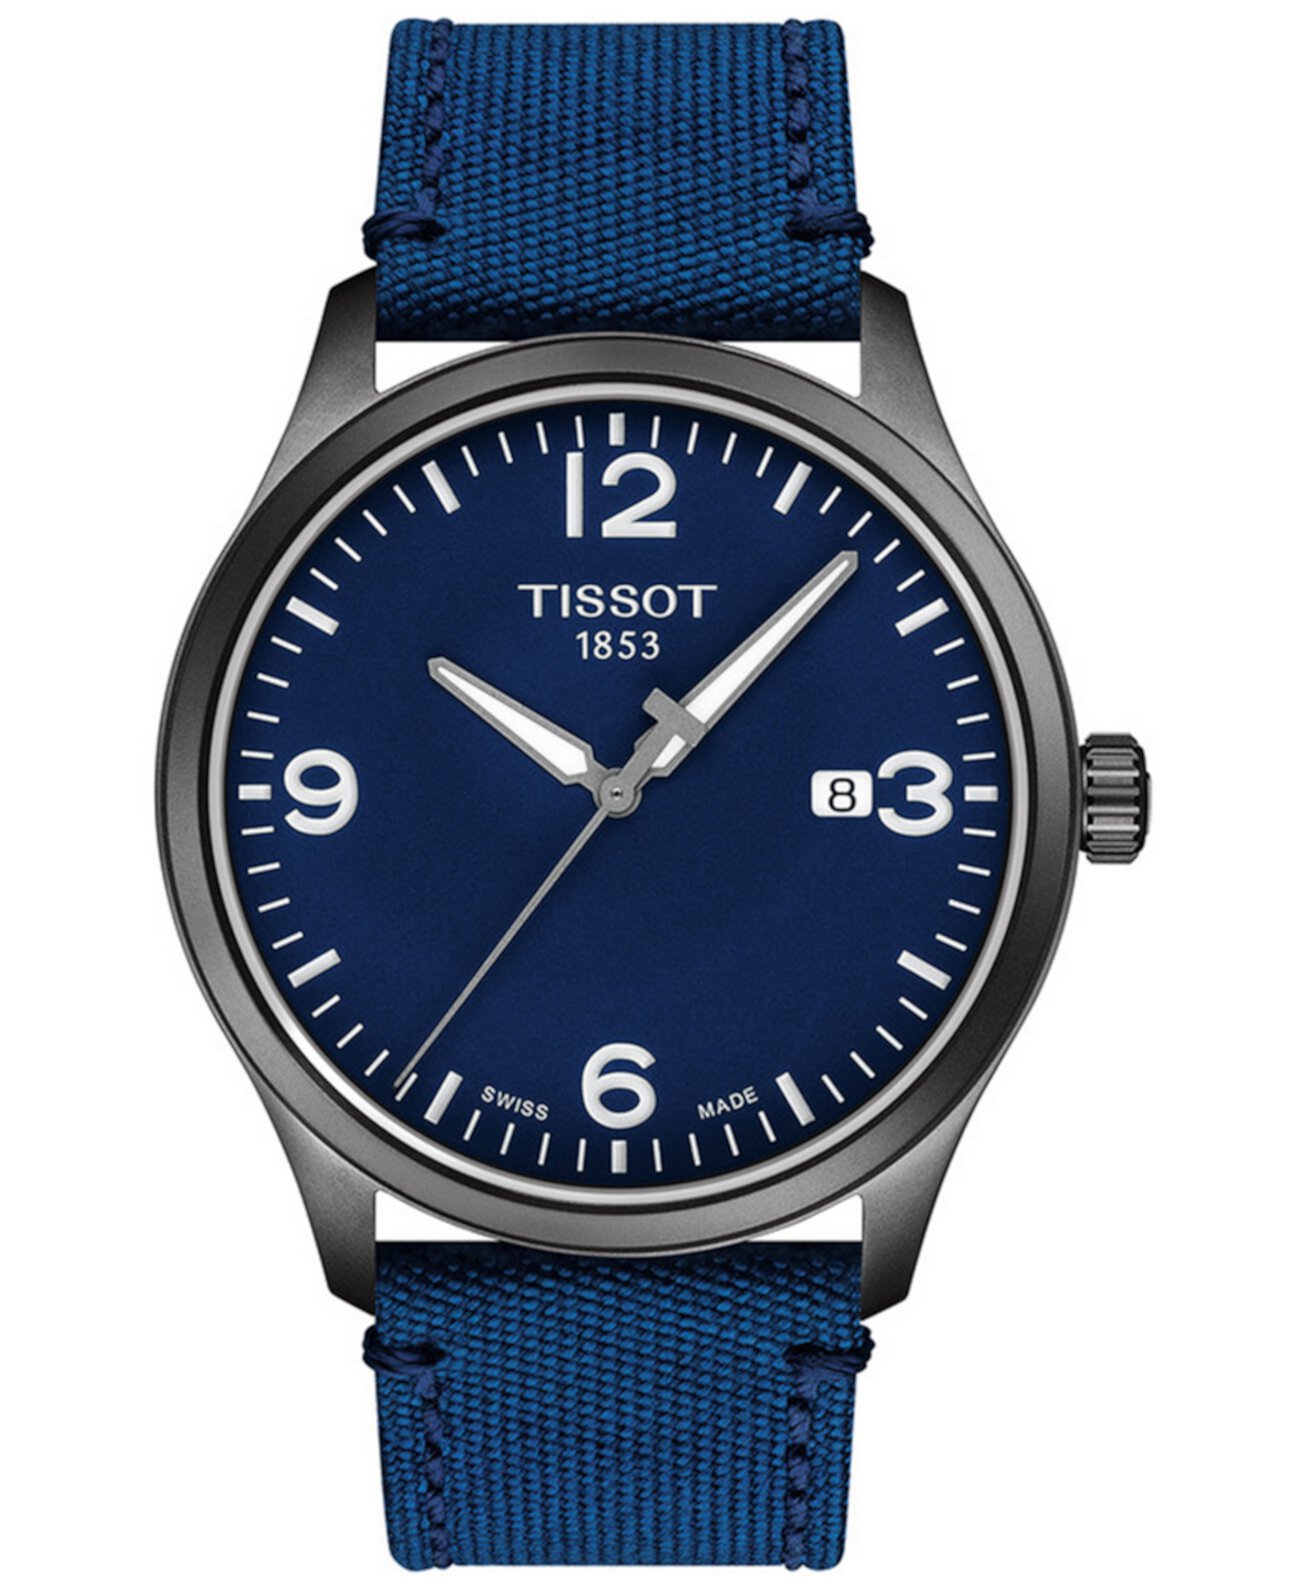 Мужские часы Swiss Gent XL с синим тканевым ремешком, 42 мм Tissot